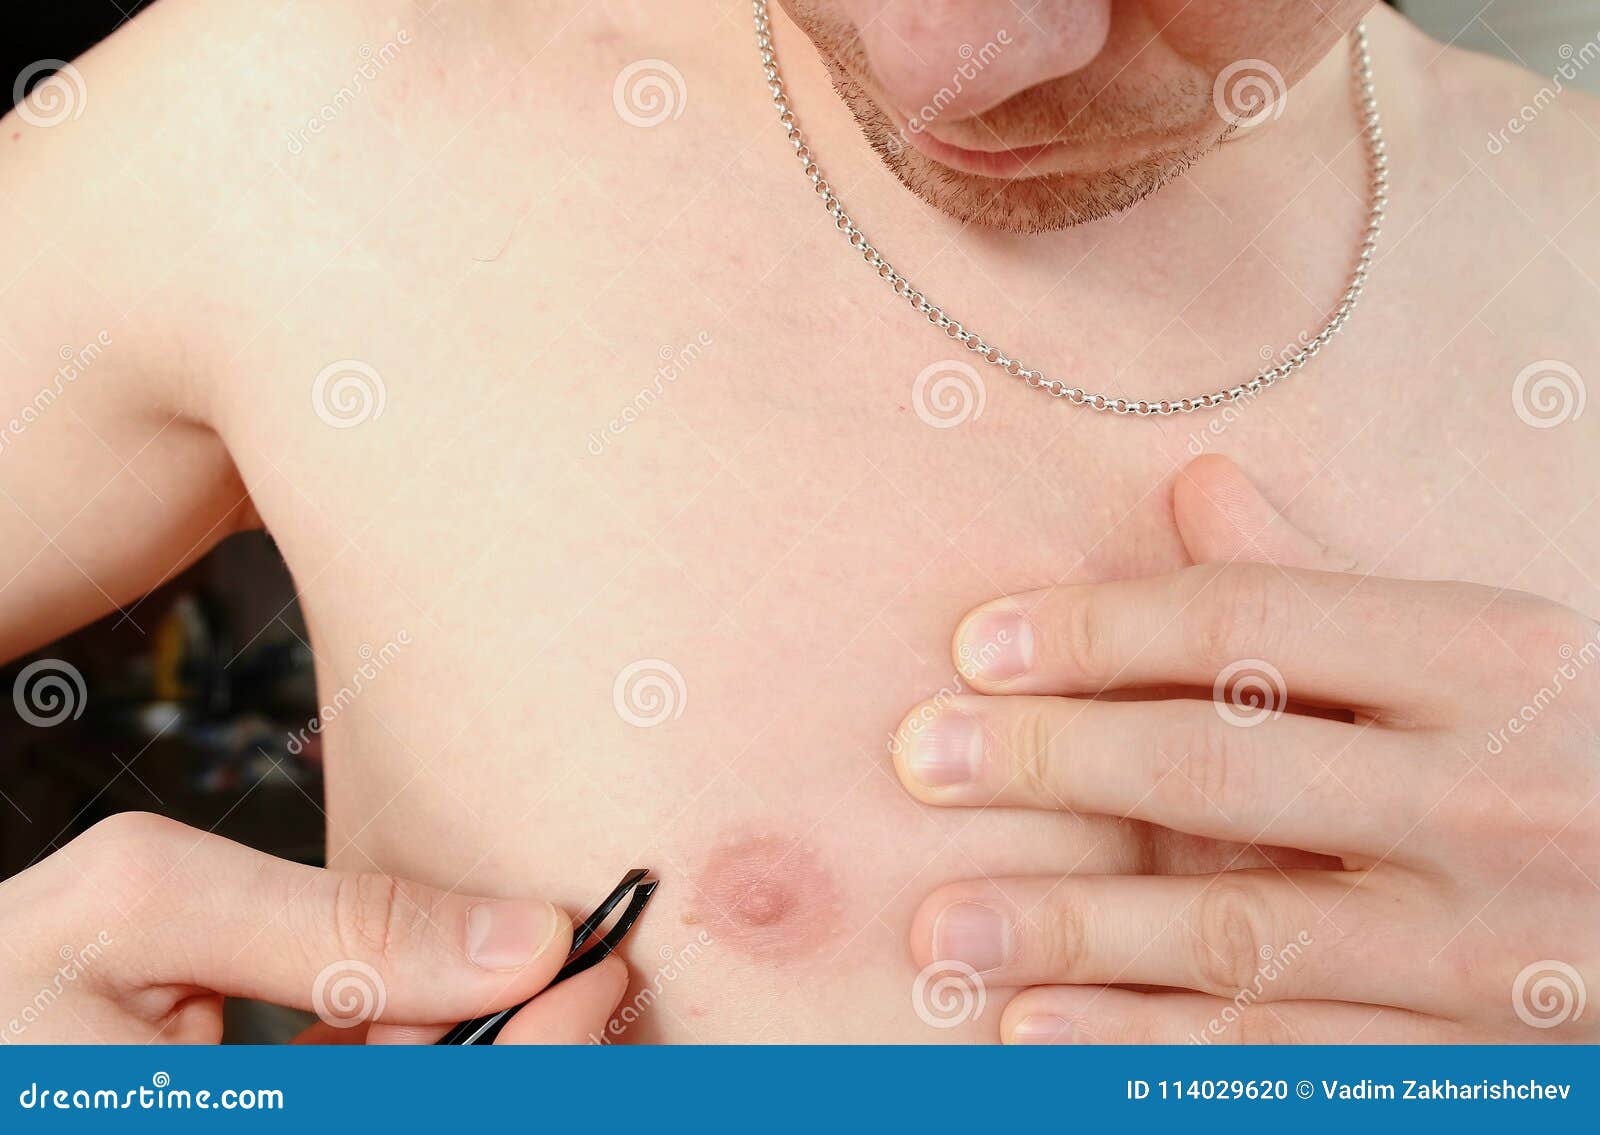 шарик на груди у мужчин фото 27